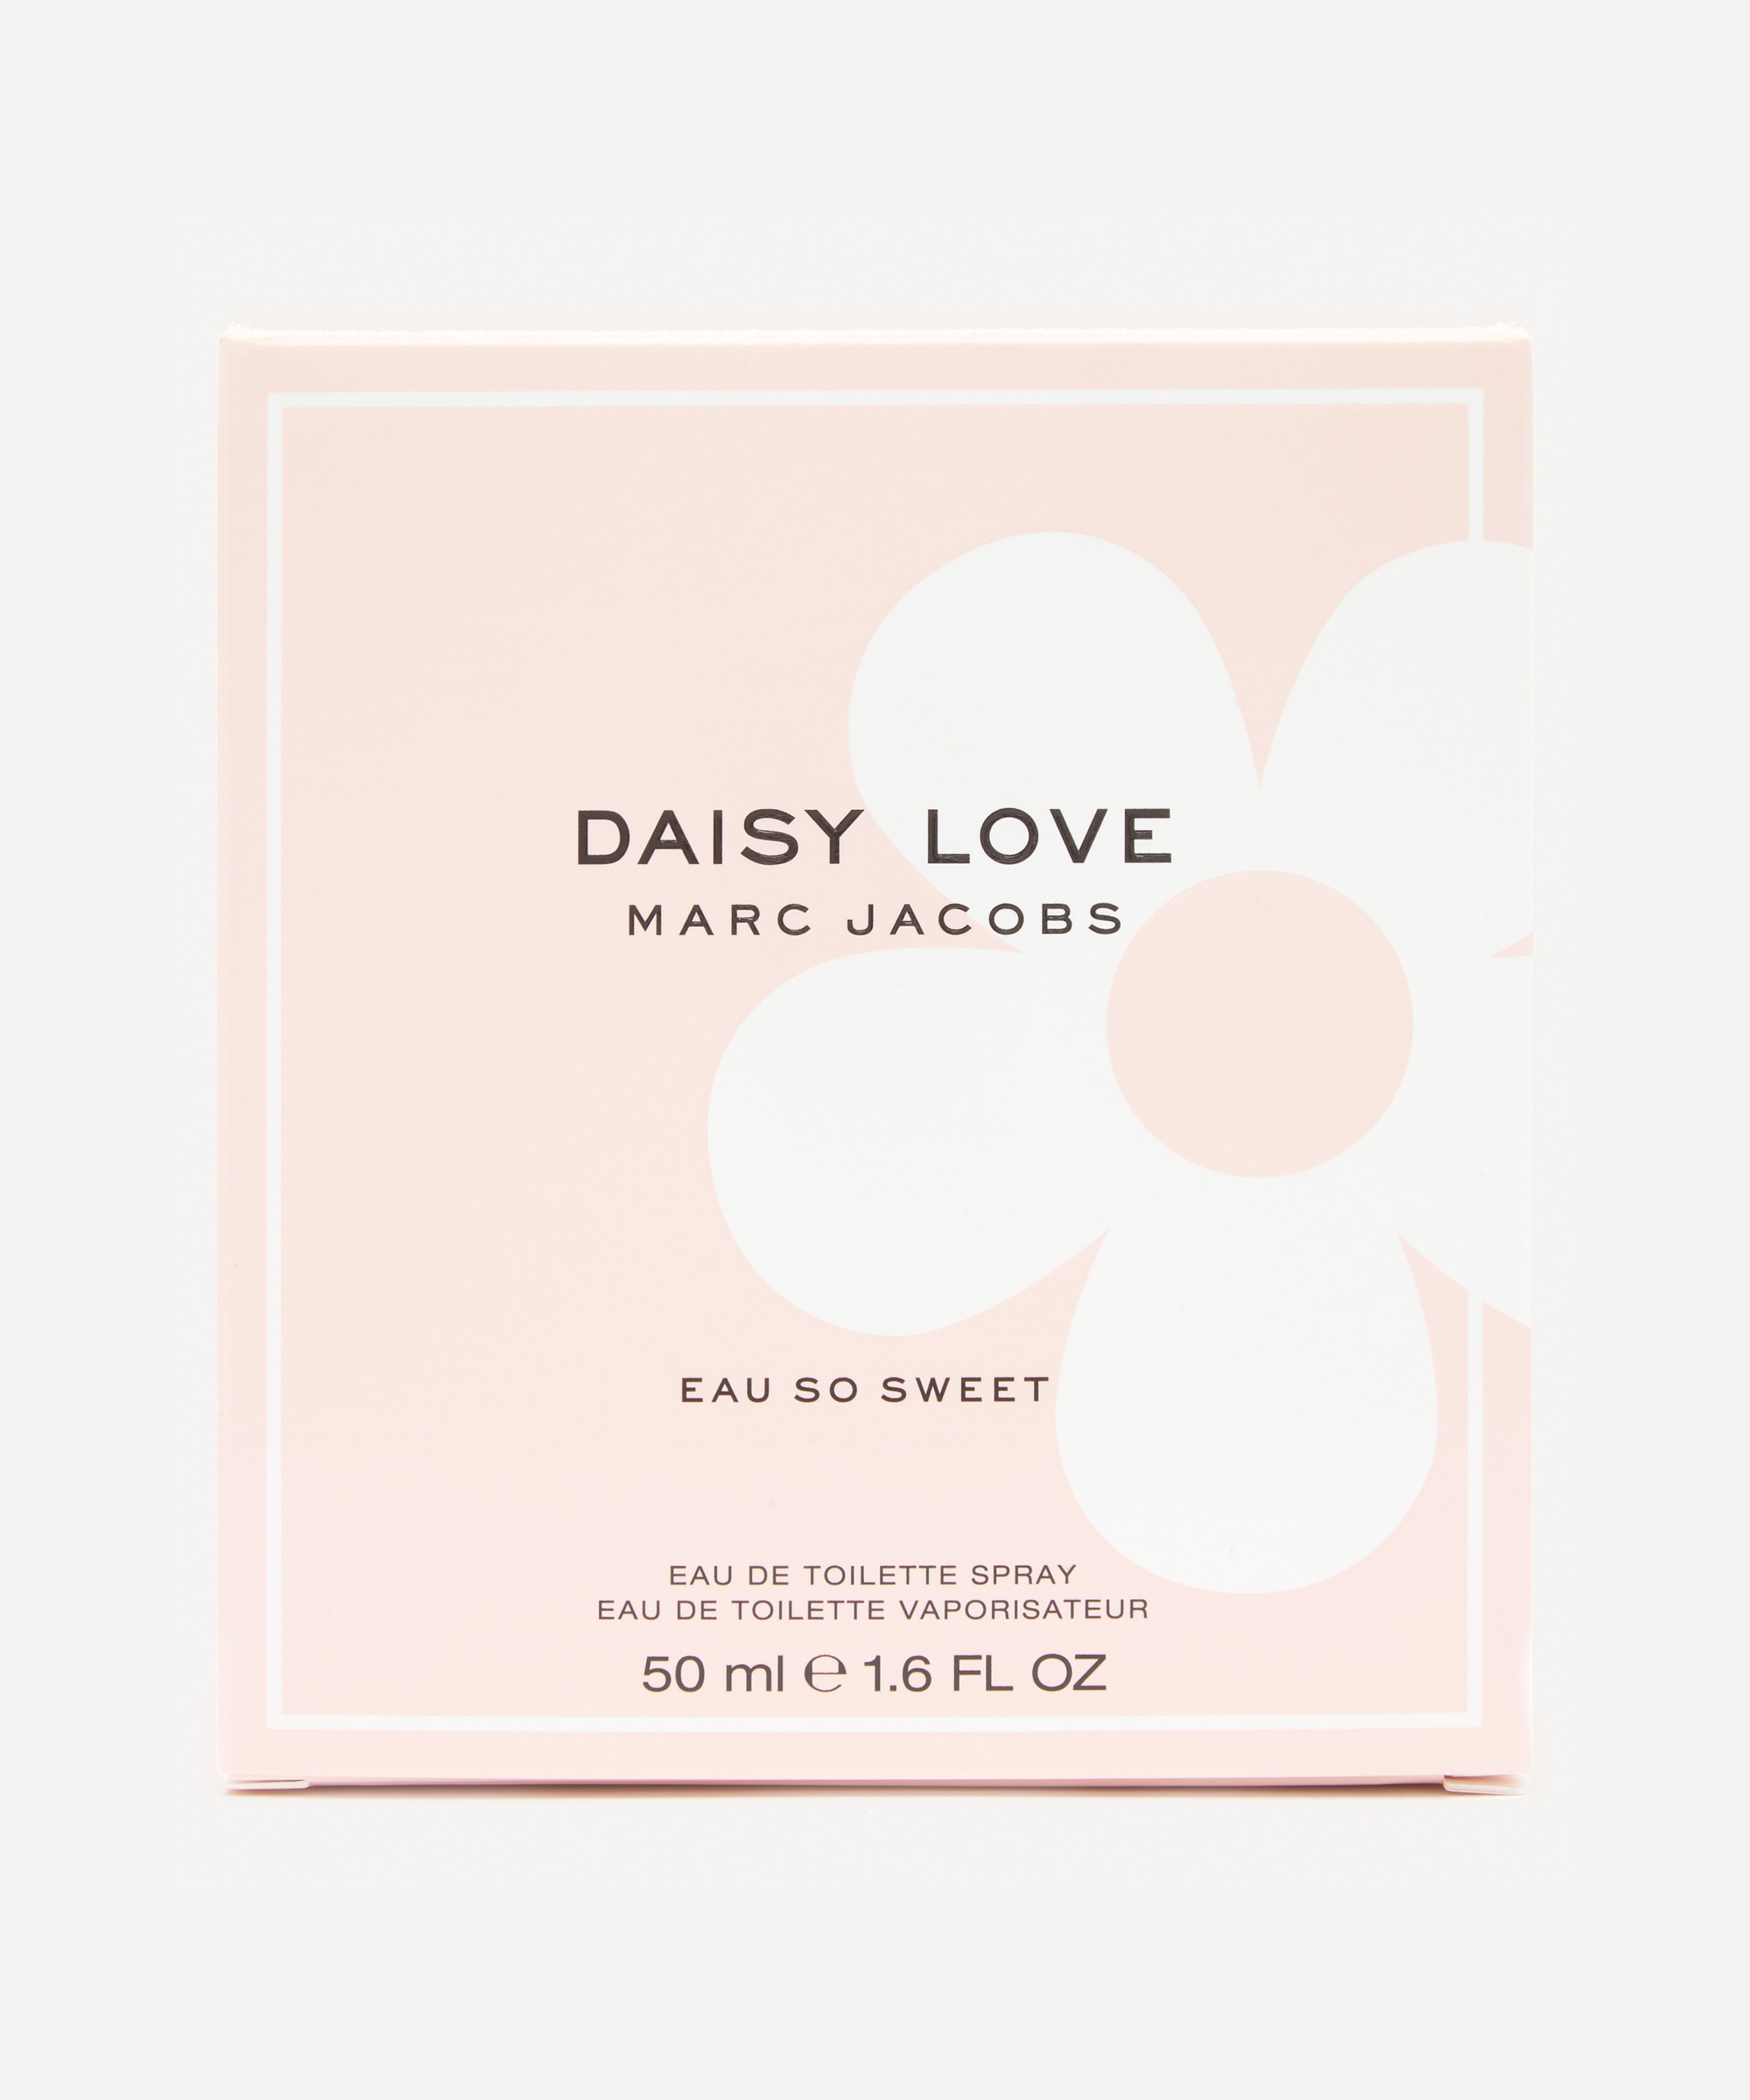 Marc Jacobs Daisy Love Eau So Sweet Eau de Toilette